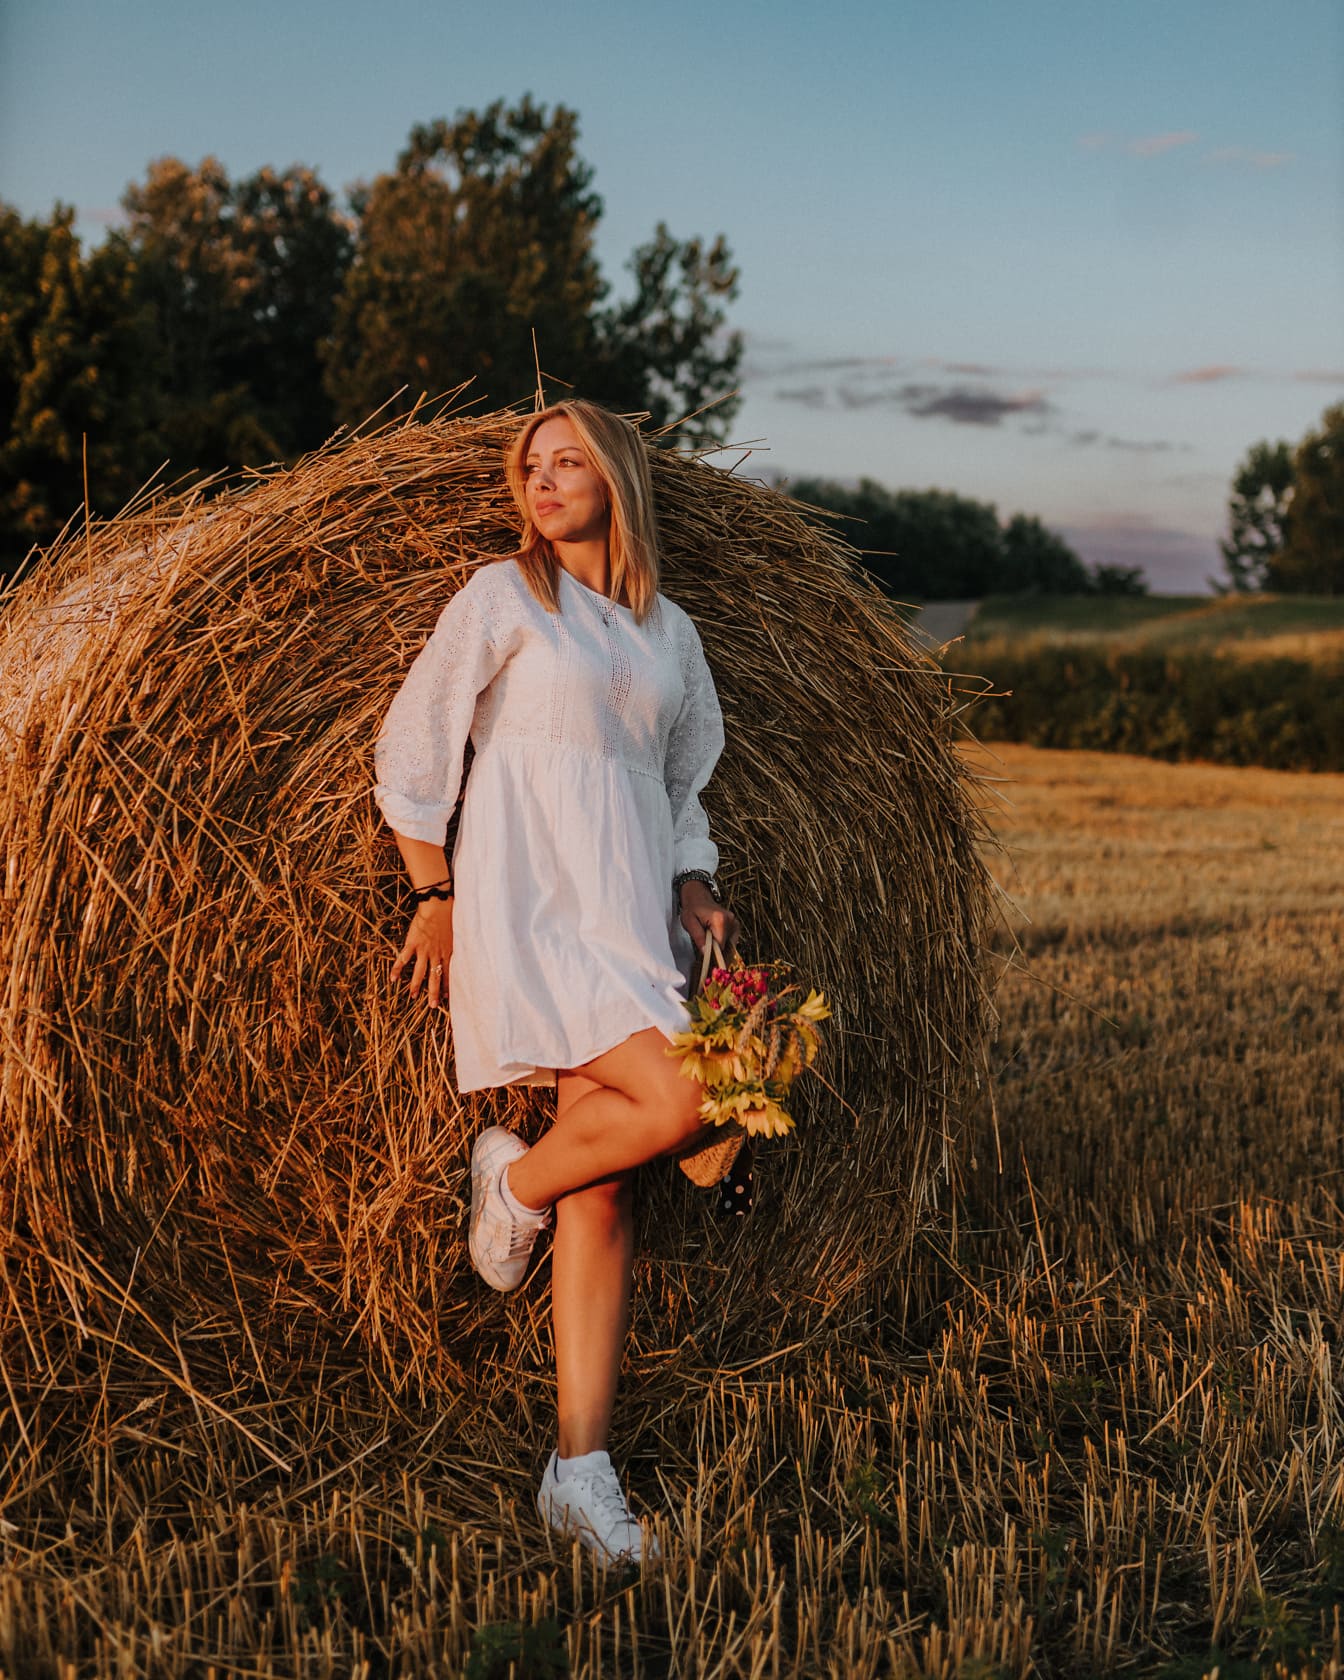 Tânără de la țară într-o rochie populară albă, sprijinindu-se pe un balot de fân în câmp de grâu